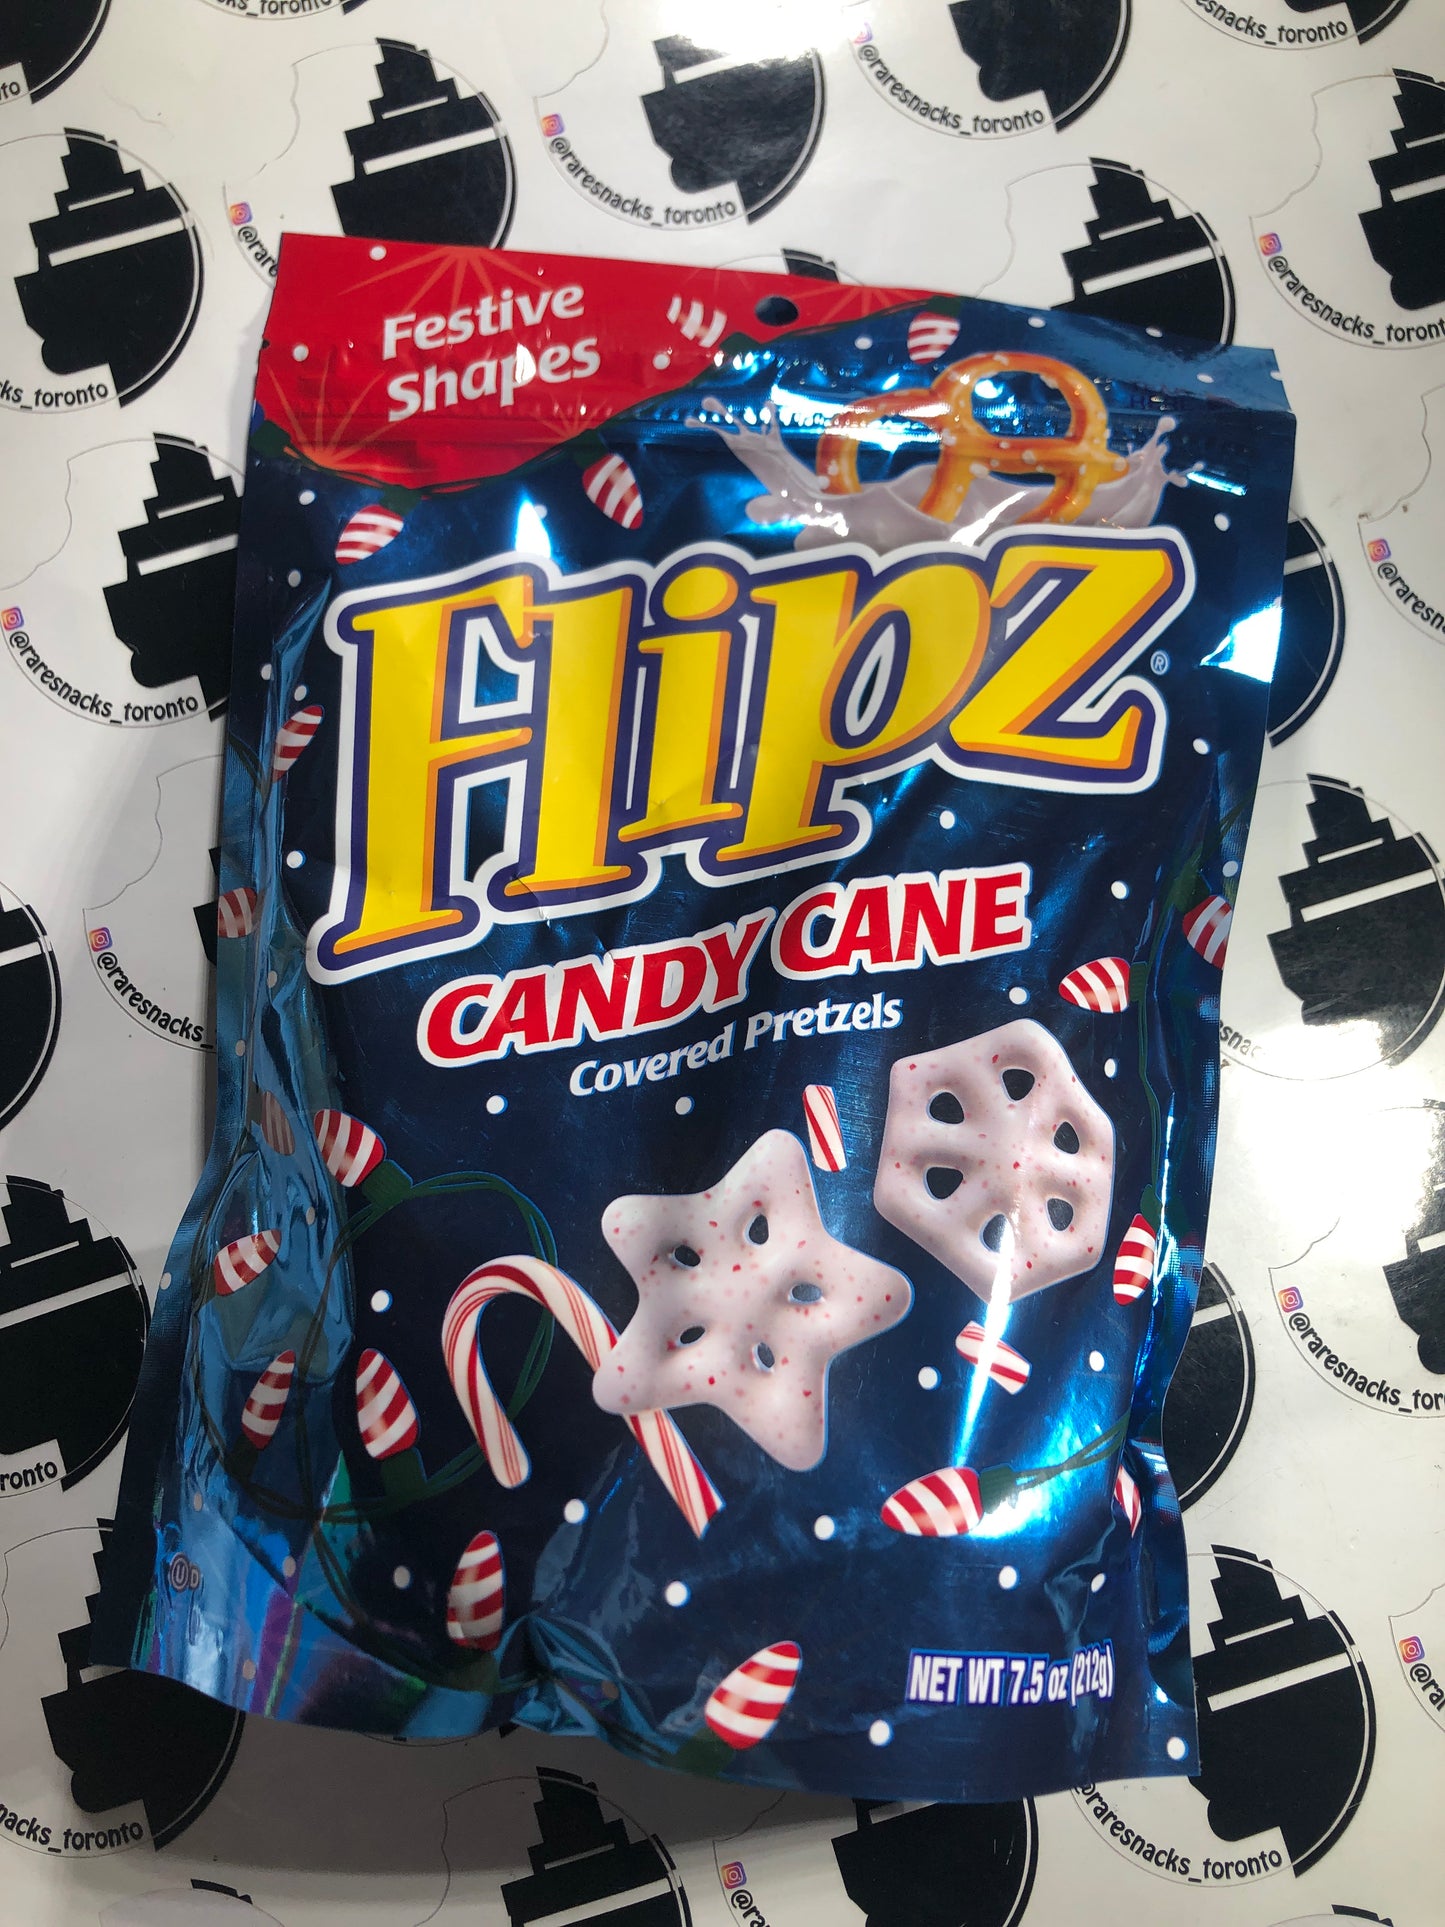 Flipz Candy Cane 7.5oz